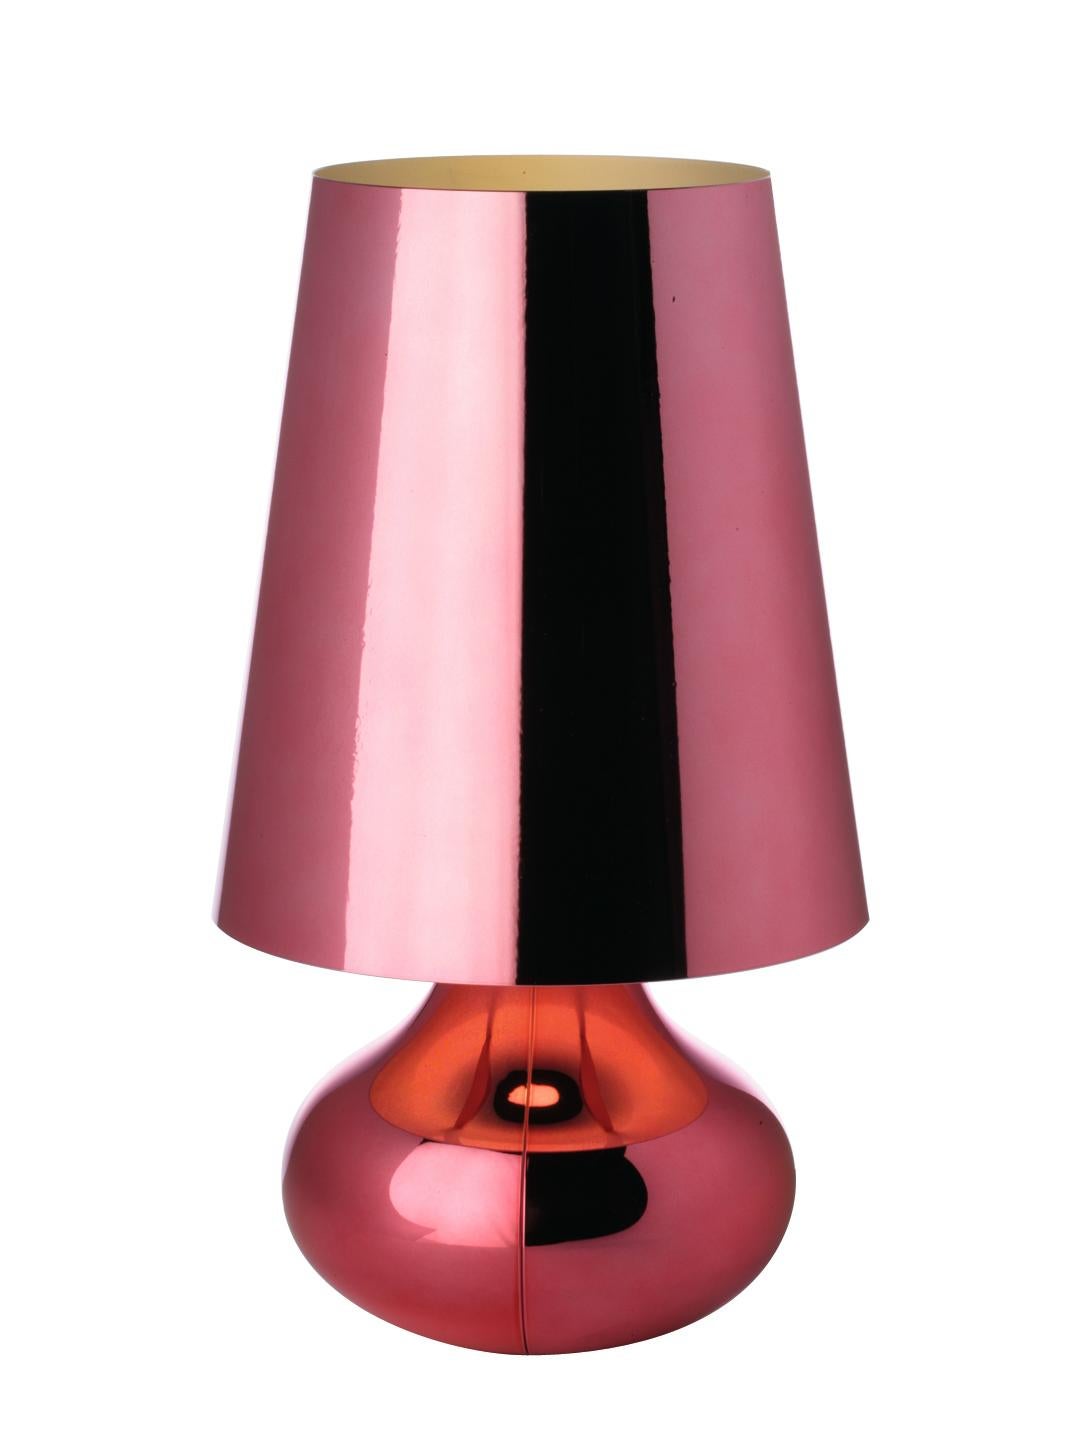 Die typische Tischlampe aus den siebziger Jahren in neuer Form und Farbe. Die Leuchte Cindy mit konischem Lampenschirm und abgerundetem Tränensockel ist in einer breiten Palette von matten Metalltönen erhältlich. Die Besonderheit von Cindy ist ihre